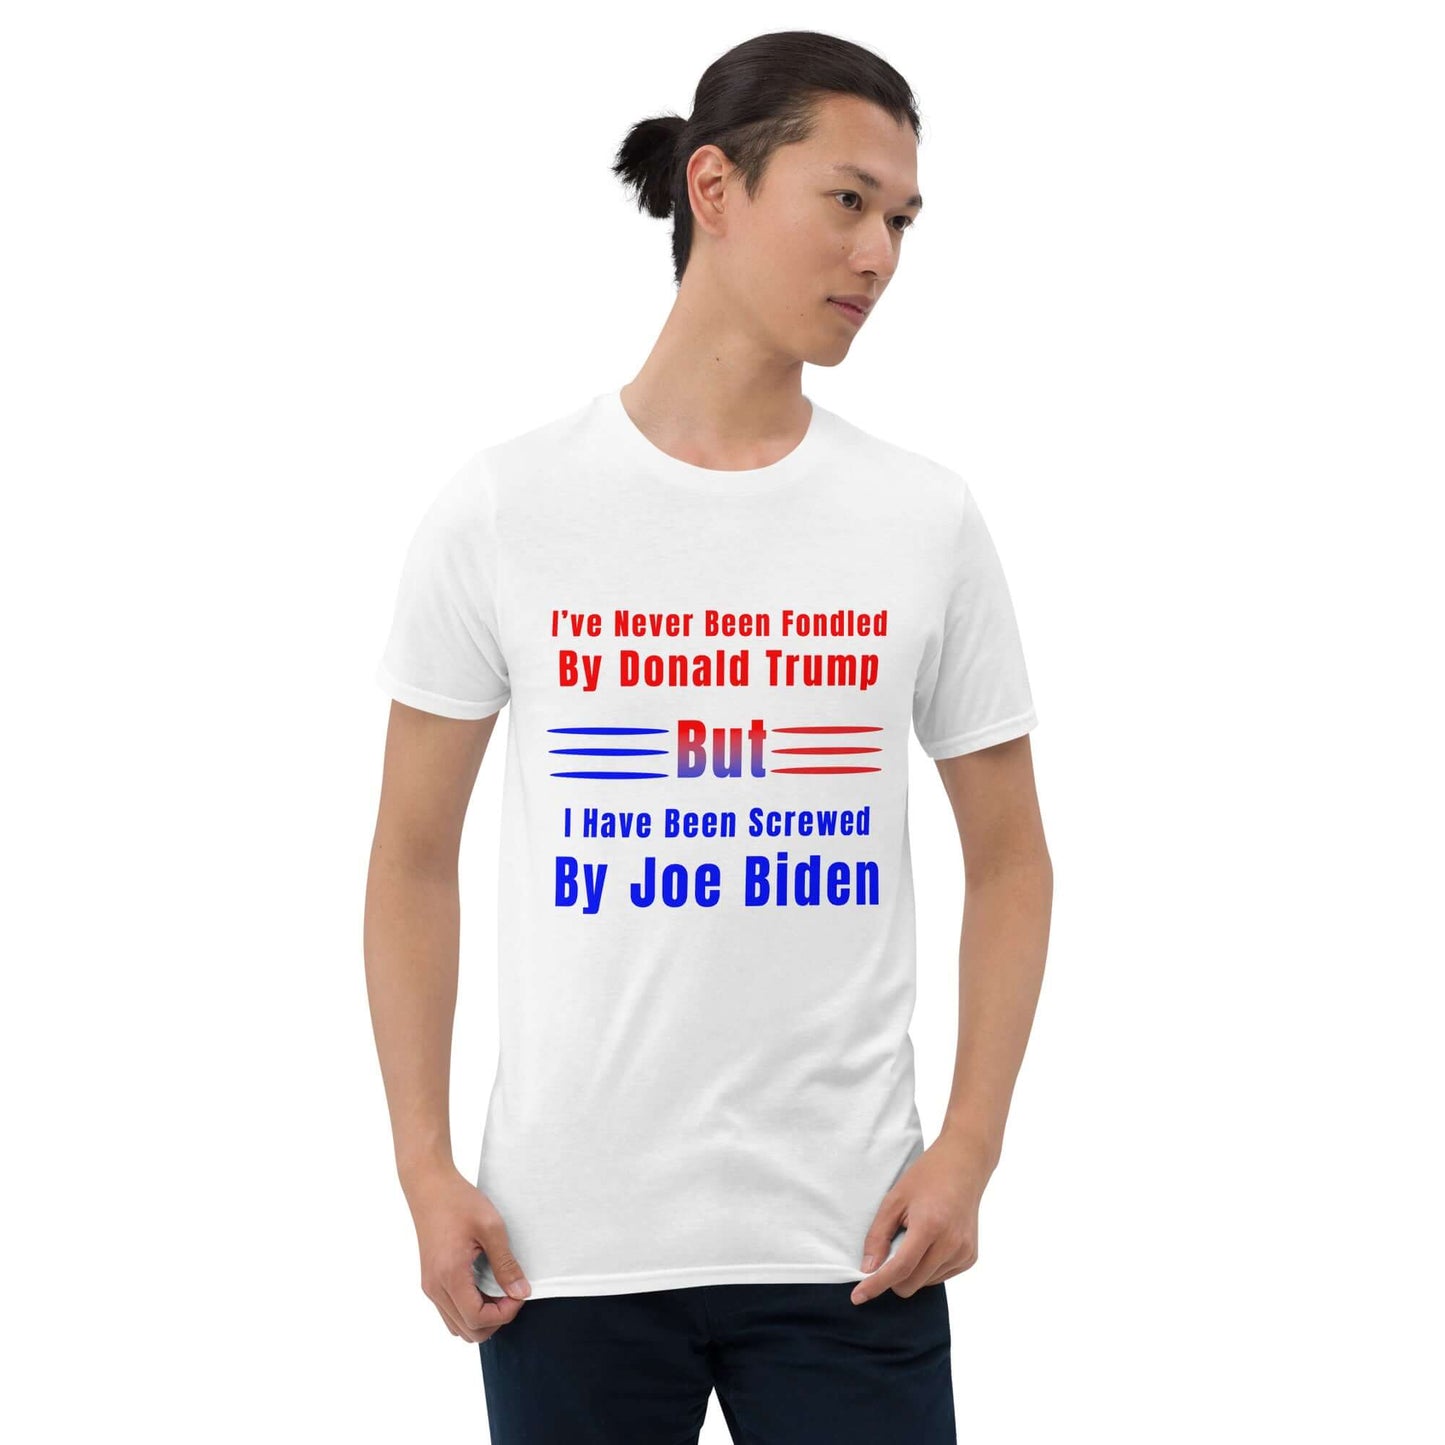 Screwed by Joe Biden - Short-Sleeve Unisex T-Shirt